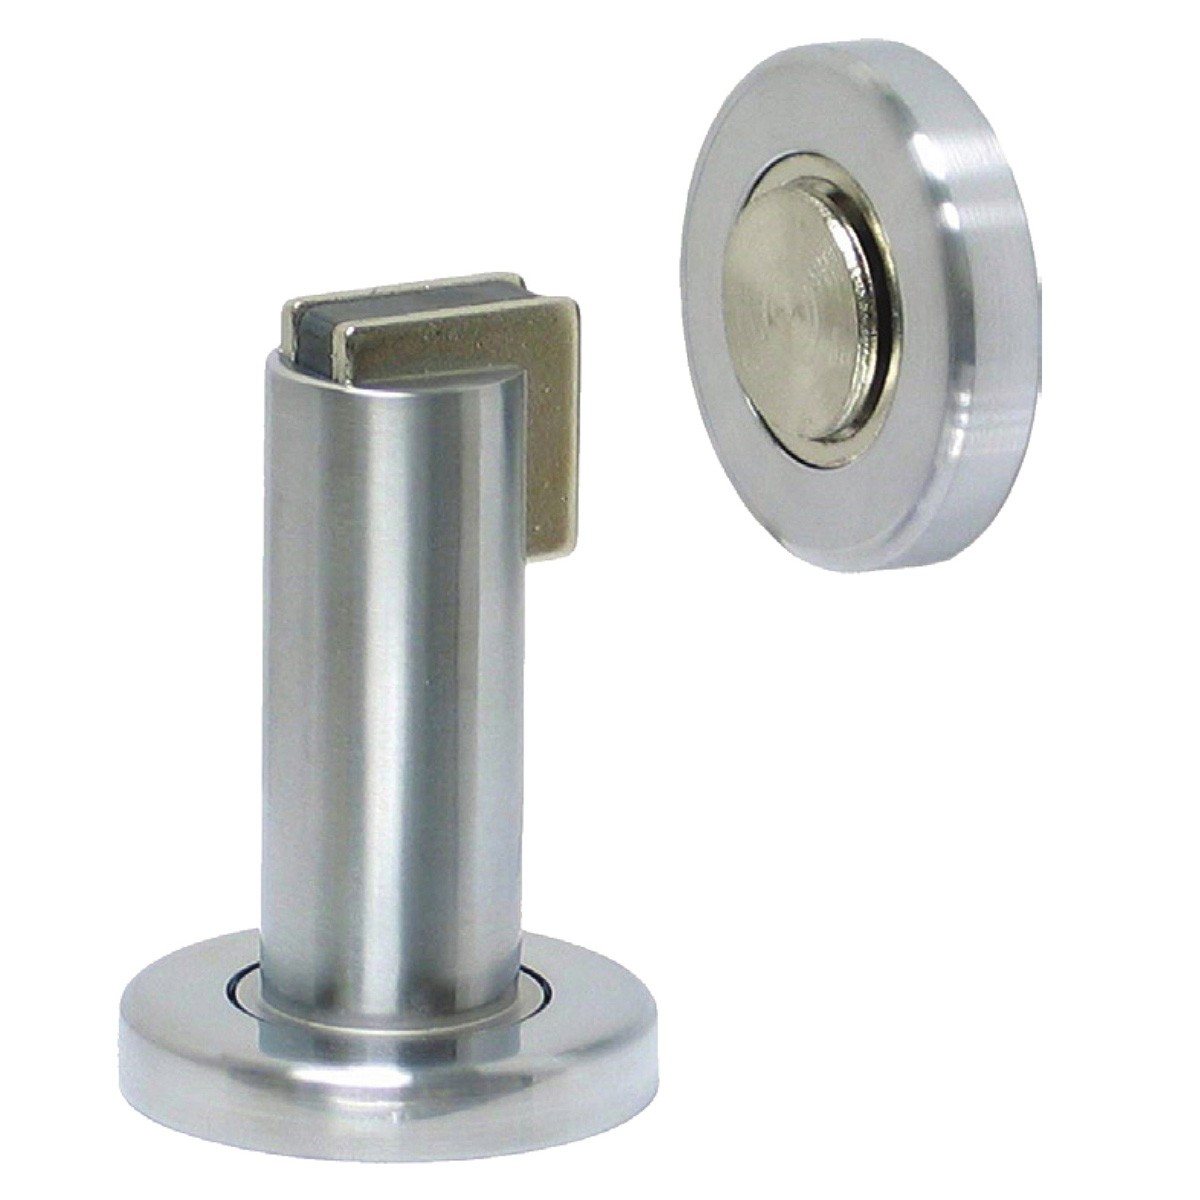 Kes hds300 2 heavy duty magnetic doorstop door holder with